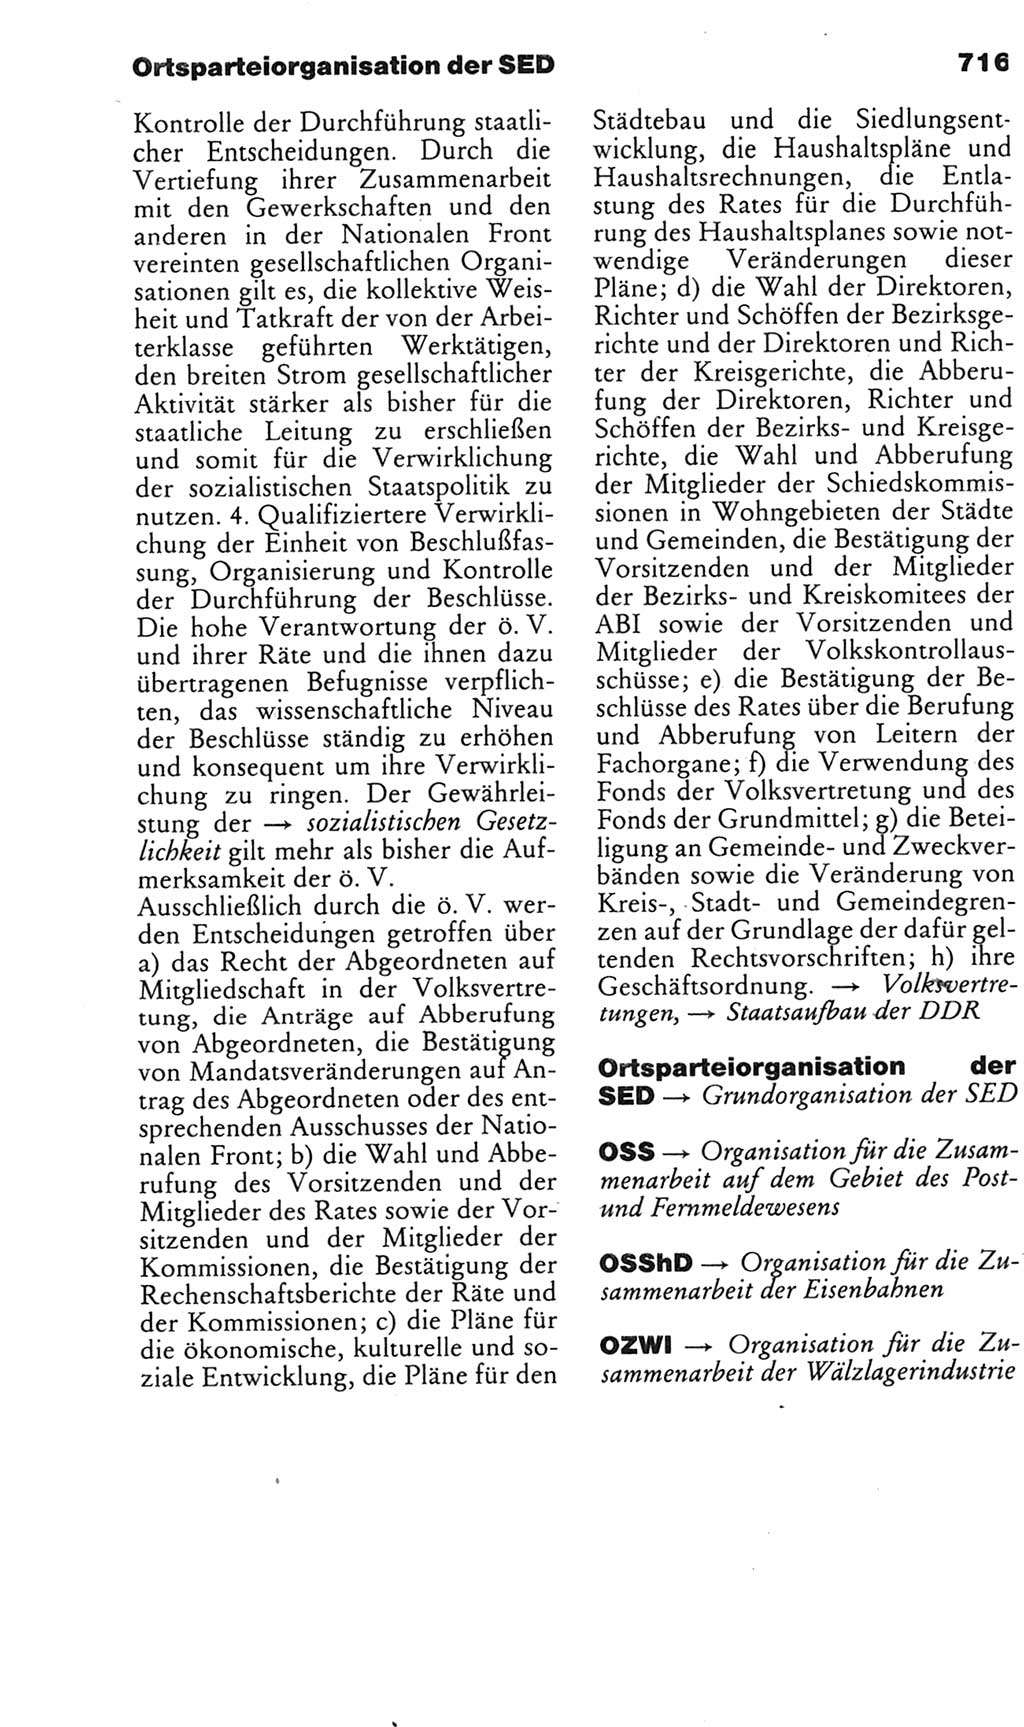 Kleines politisches Wörterbuch [Deutsche Demokratische Republik (DDR)] 1985, Seite 716 (Kl. pol. Wb. DDR 1985, S. 716)